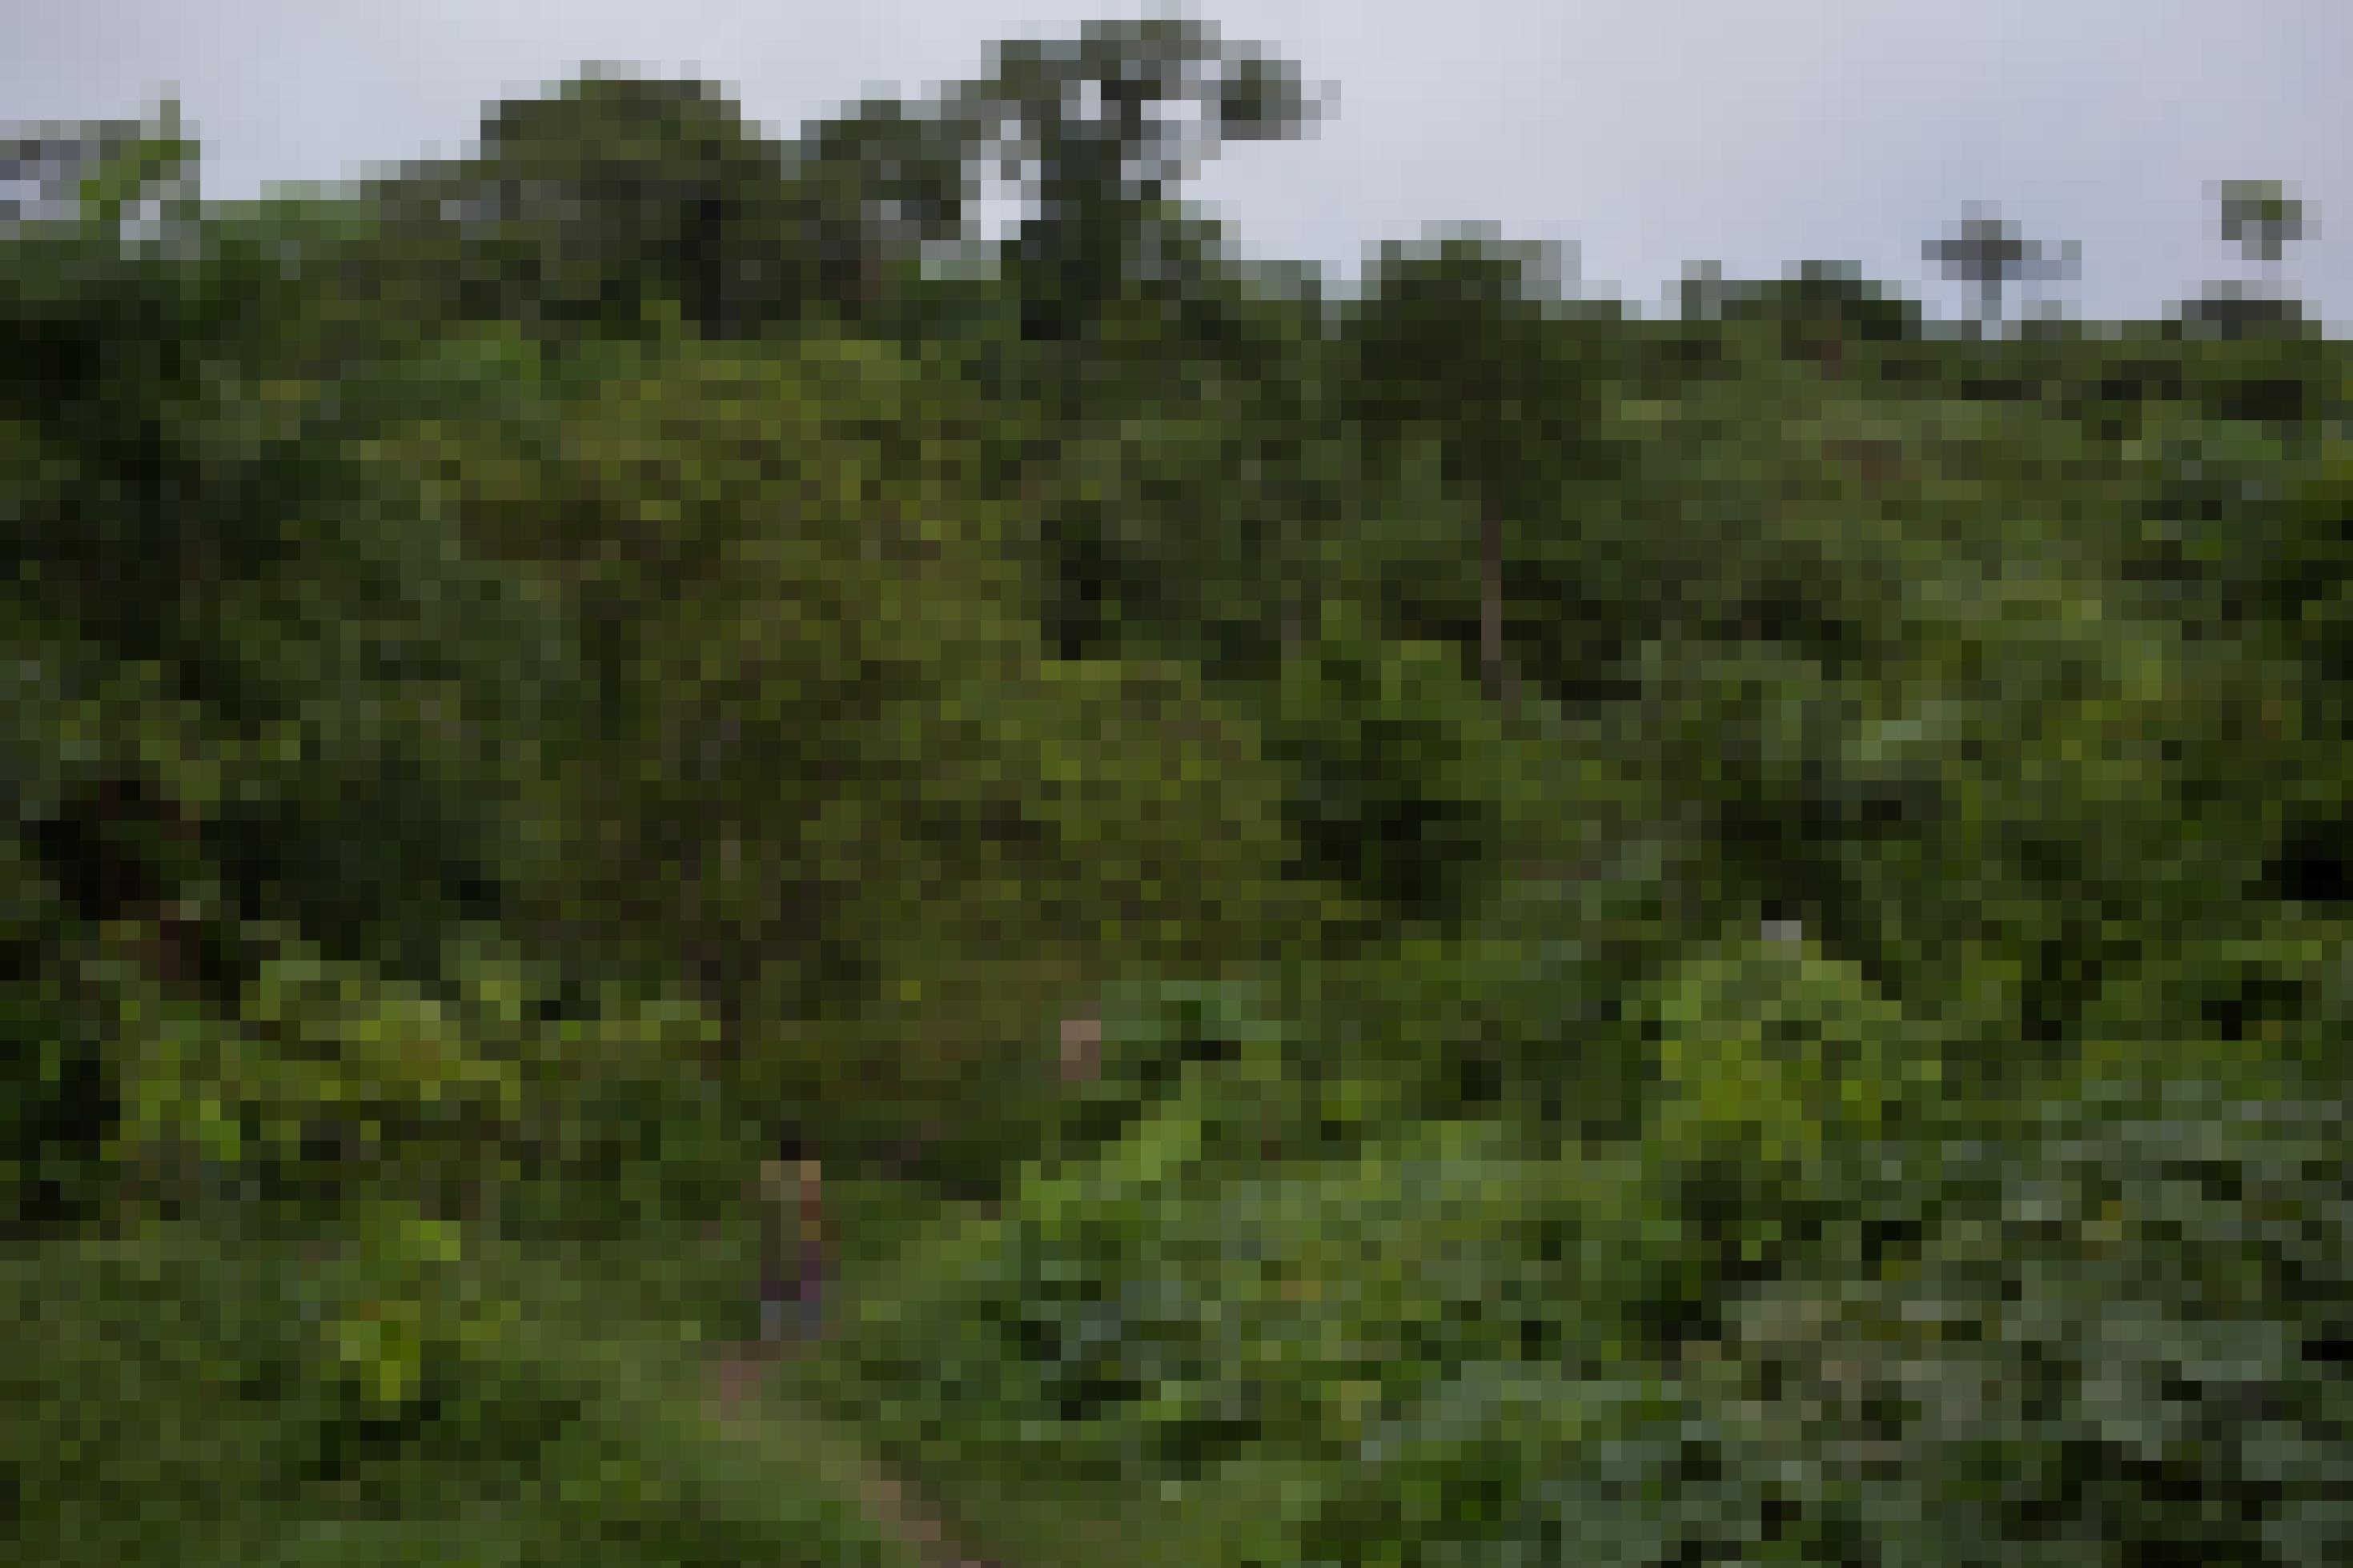 Urwald, der bei genauerem Hinsehen ein Garten ist mit den verschiedensten Pflanzen und Obstbäumen am Itacoai-Fluss, im indigenen Schutzgebiet Vale do Javari.